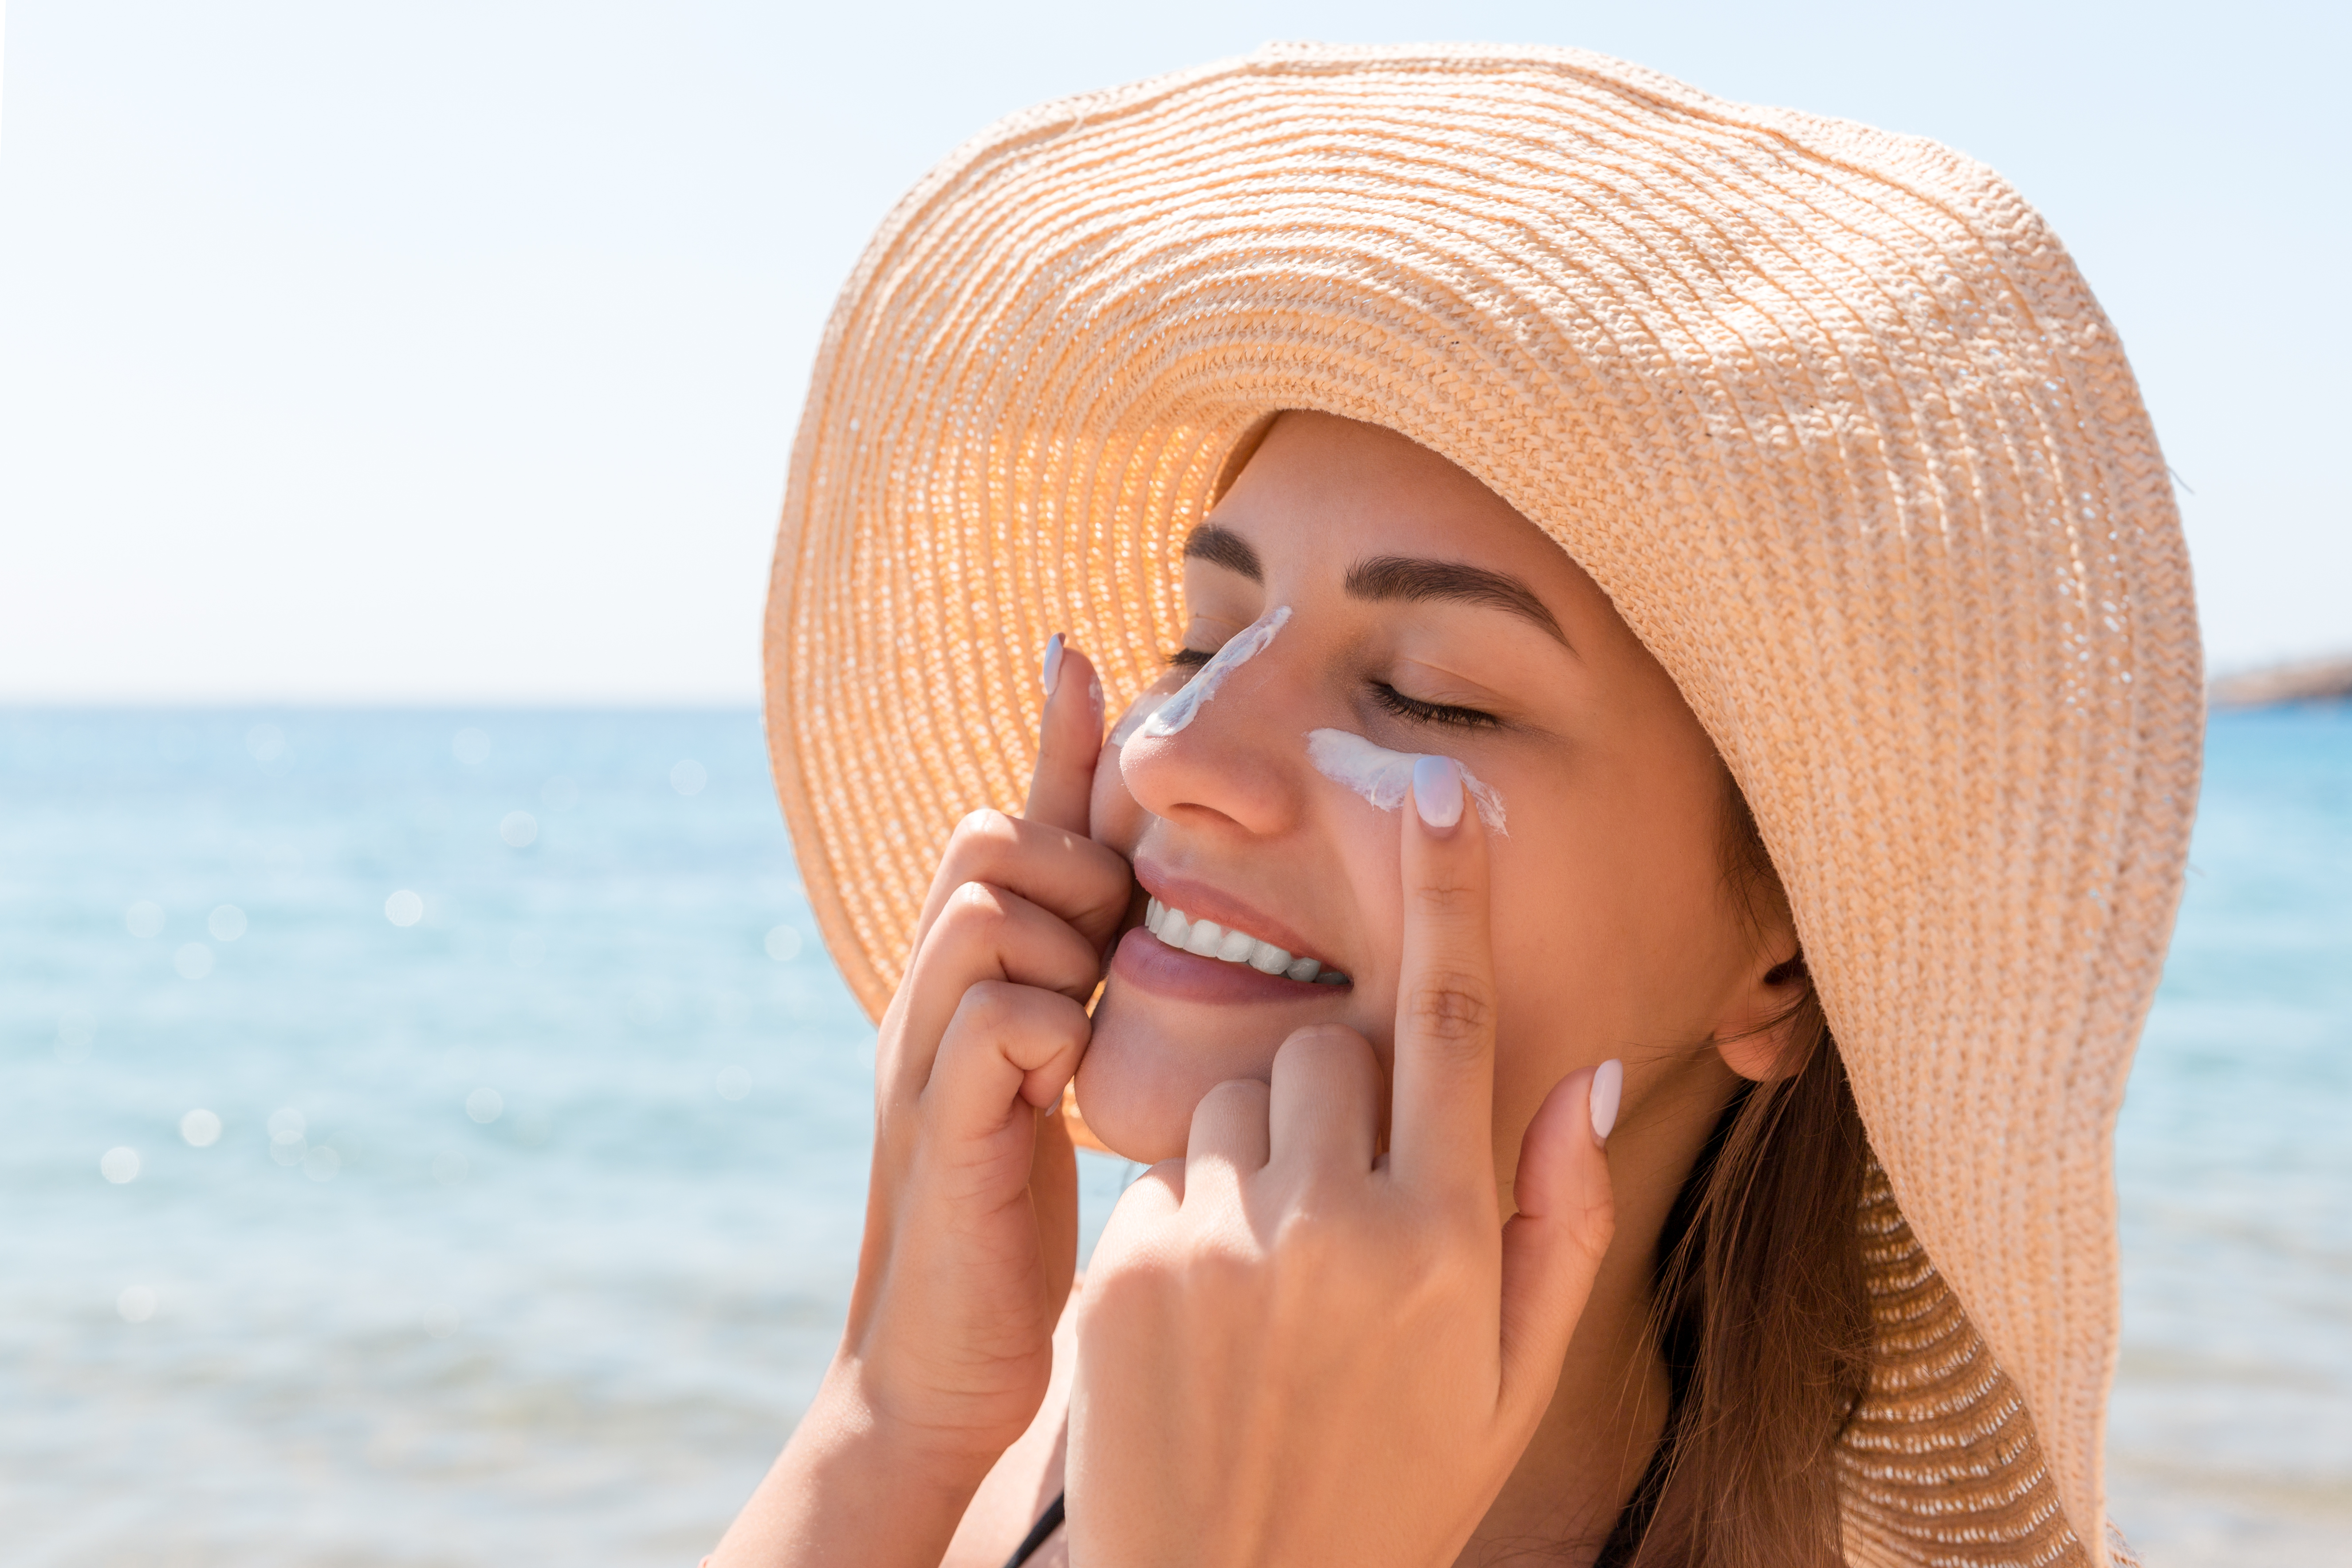 Femme appliquant de la crème solaire sur son visage à la plage | Source : Shutterstock